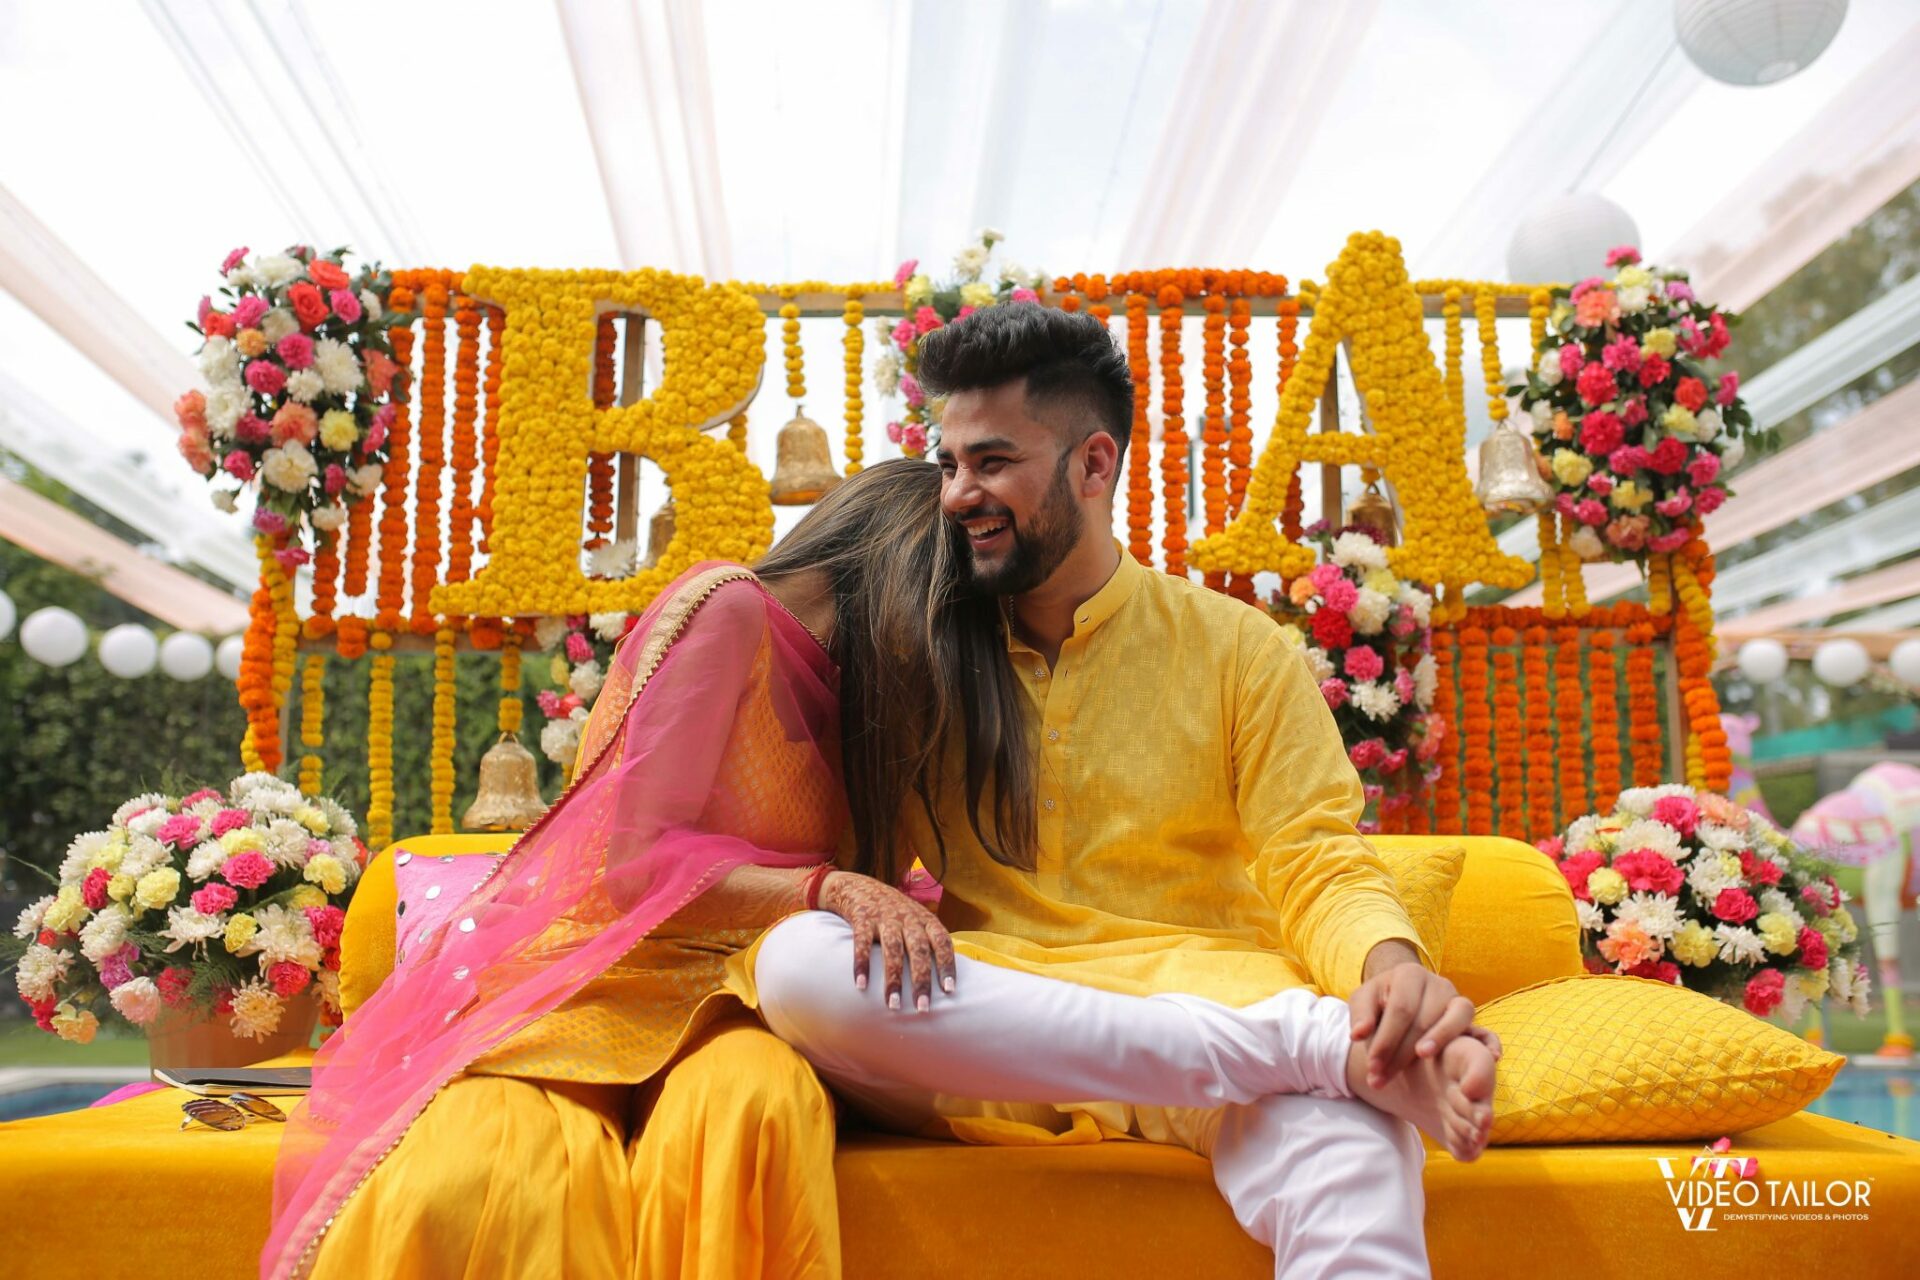 Free Indian Wedding Planning Templates - DesiWeds